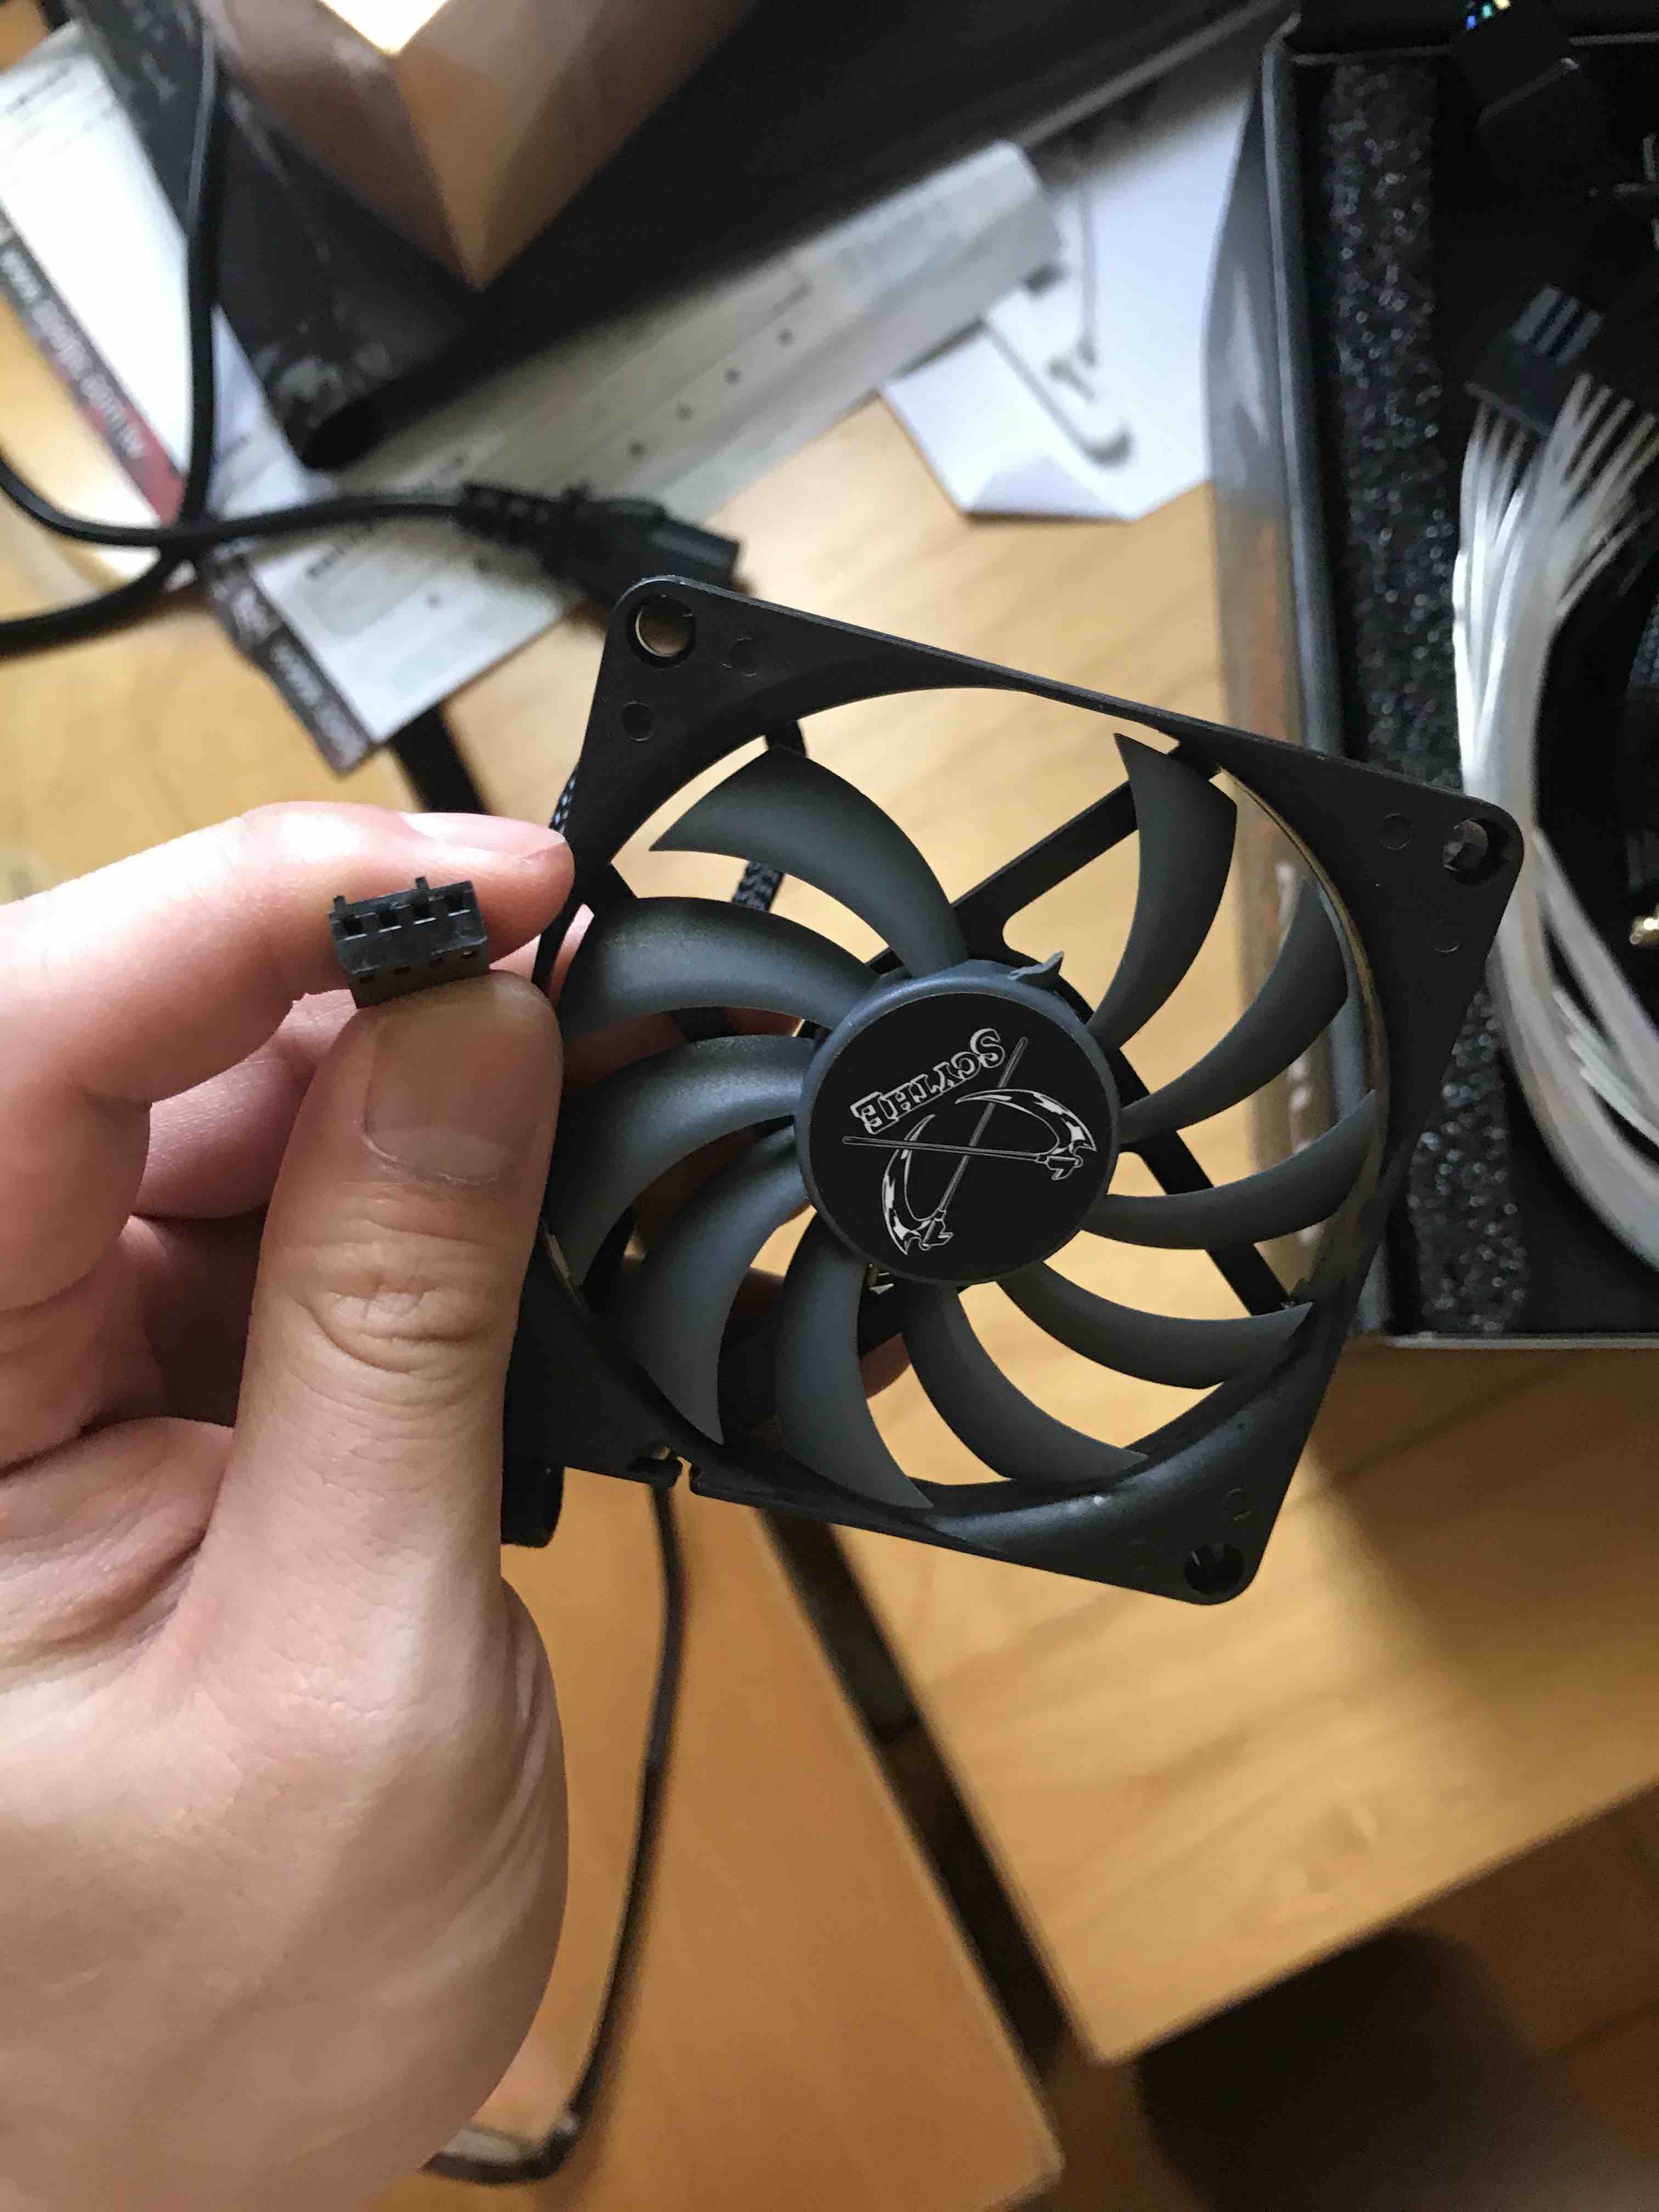 Broken CPU fan